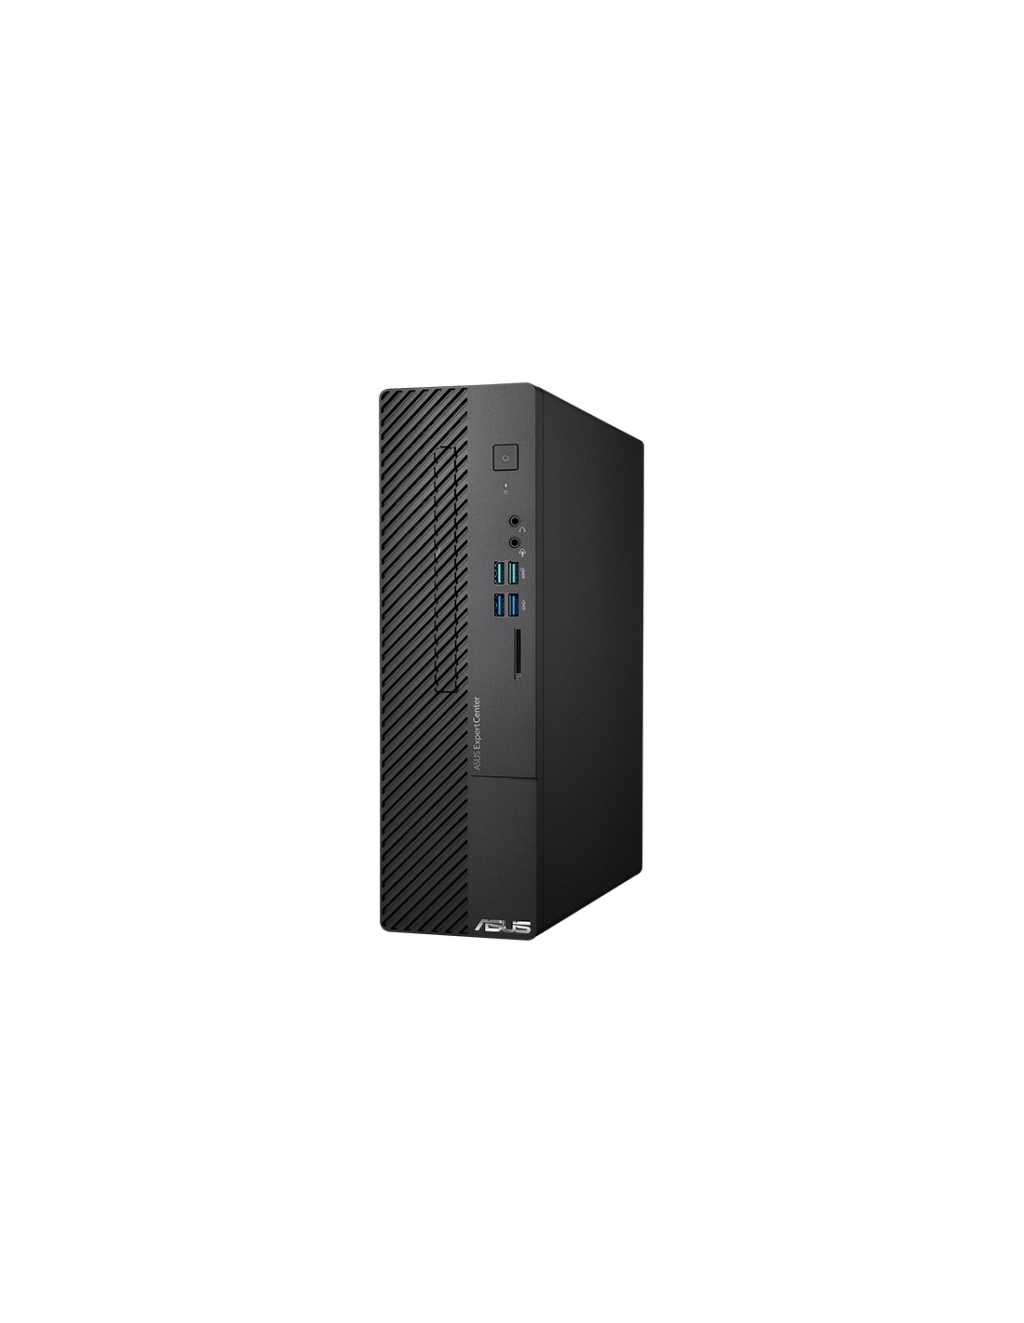 Компютър ASUS D500SC-5114001640на ниска цена с бърза доставка